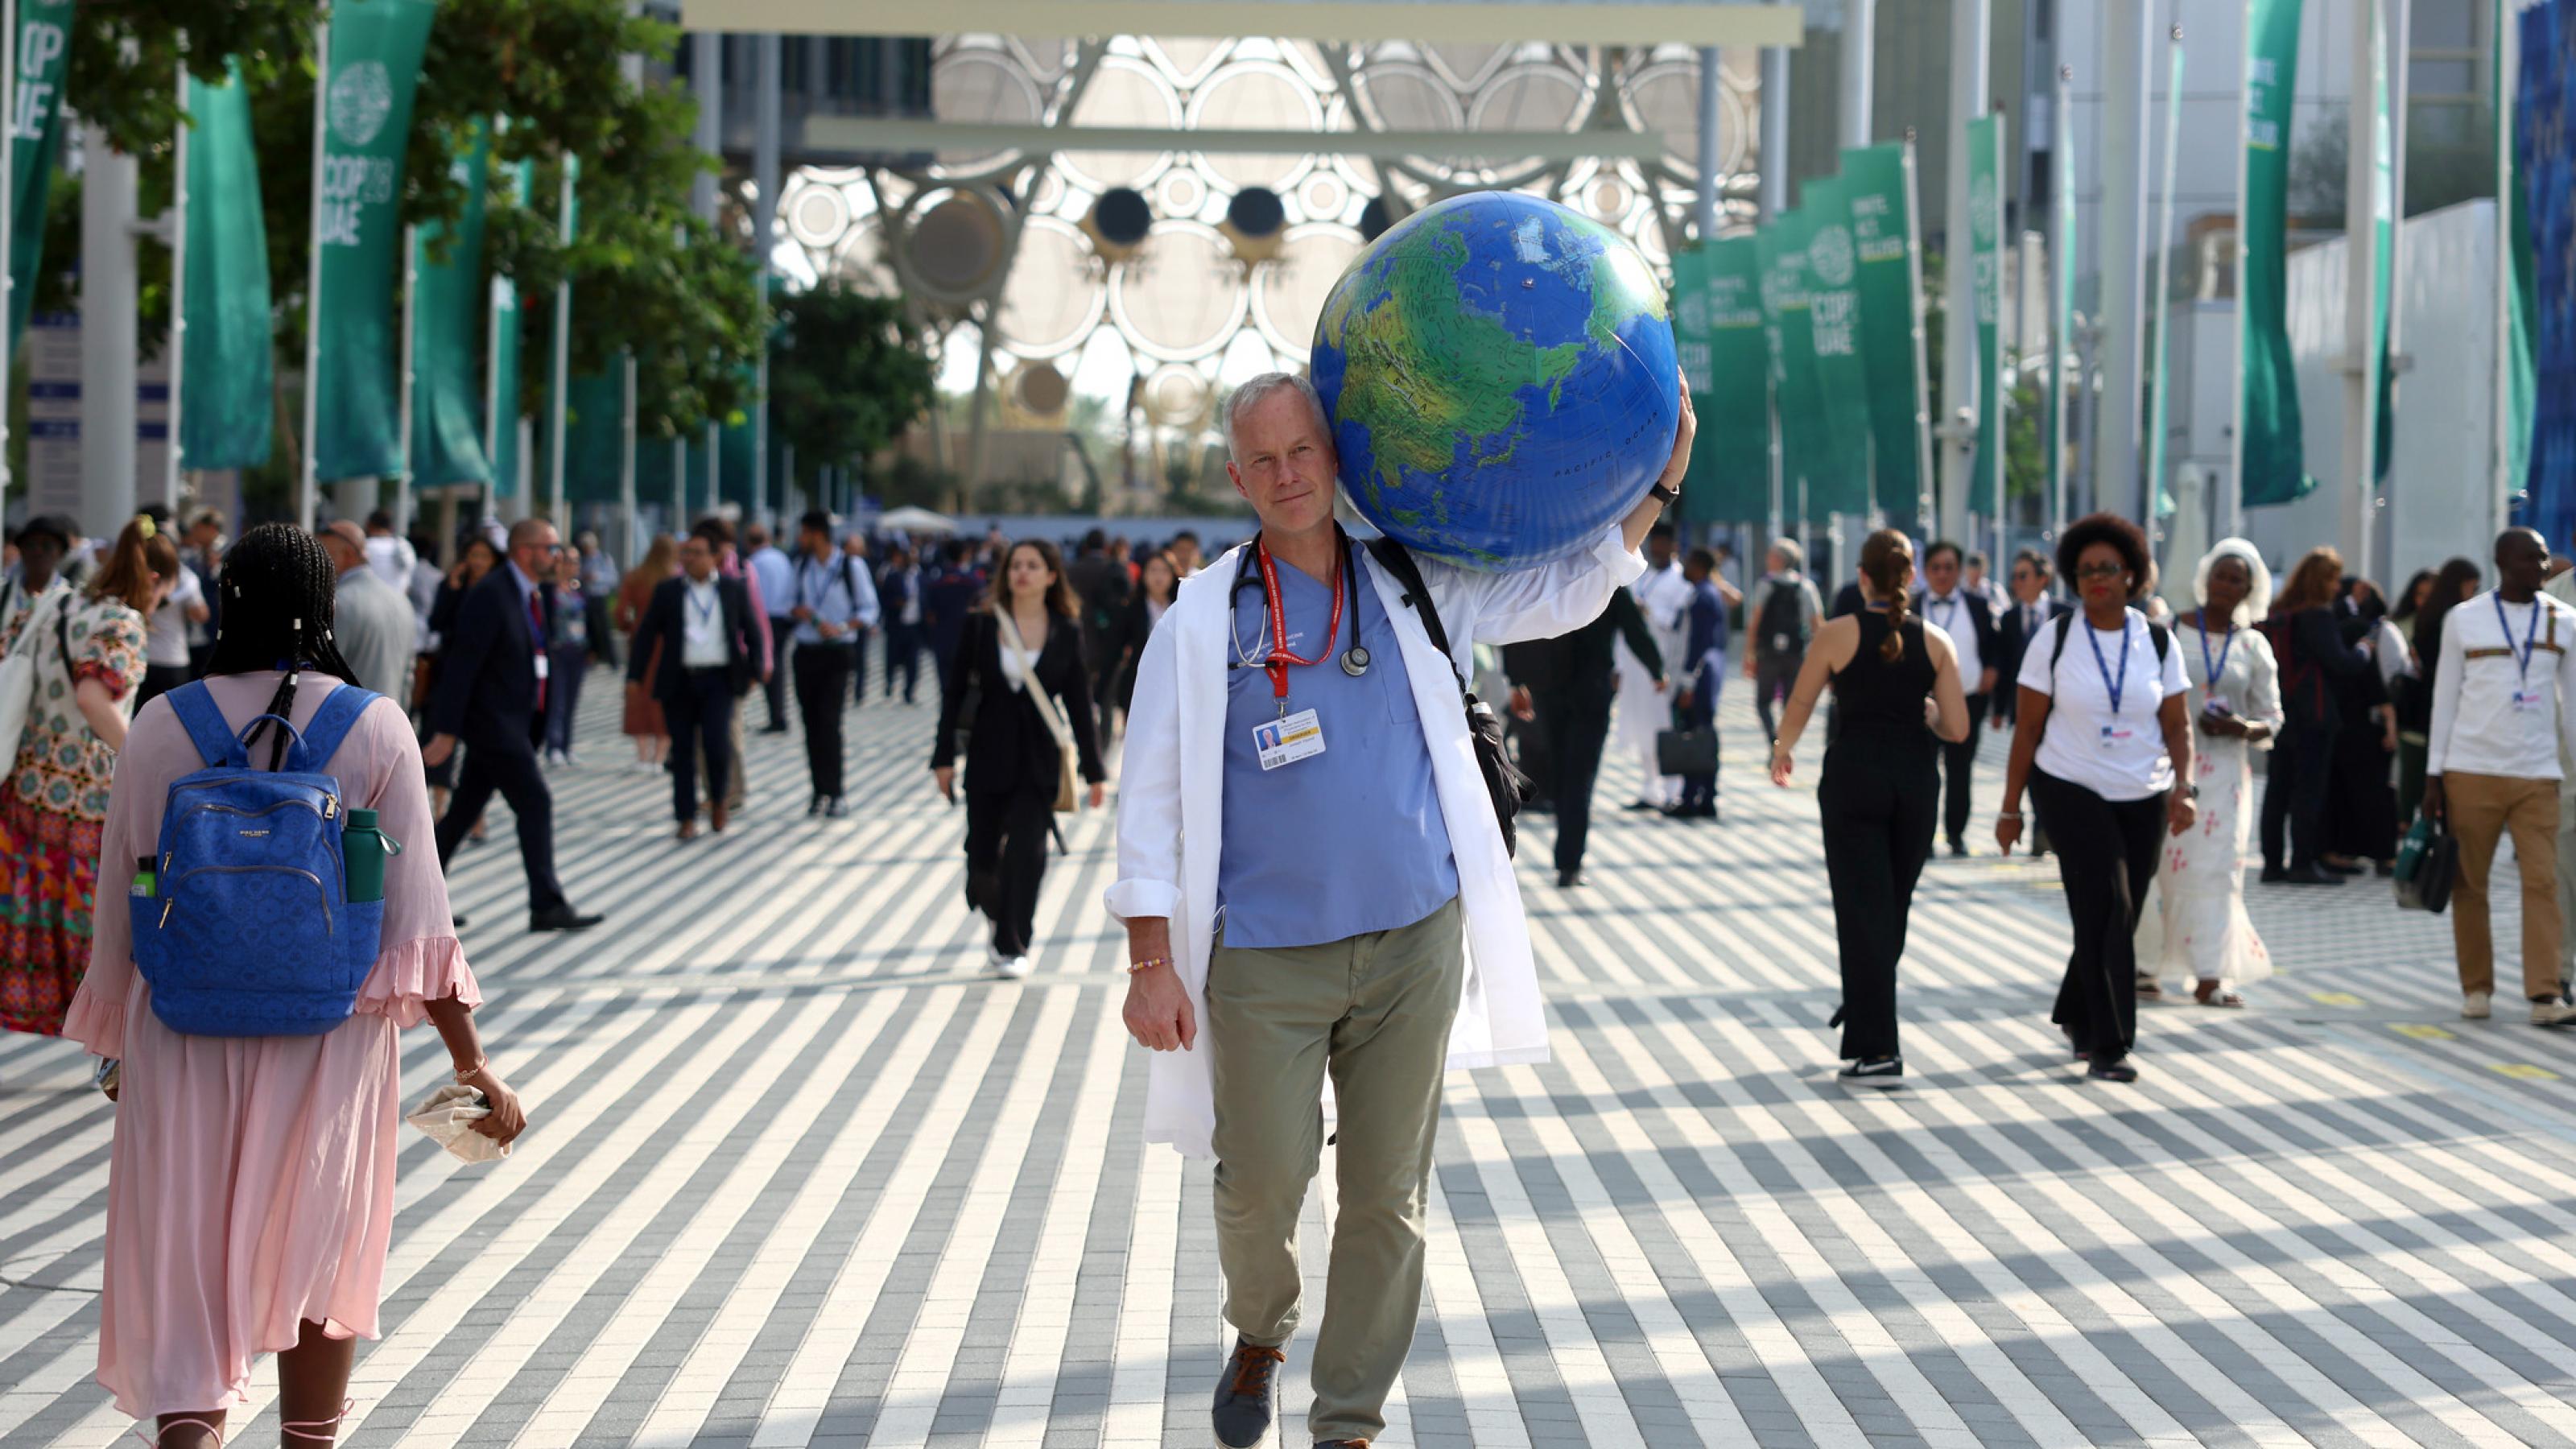 Arzt in Medizinkittel mit Stethoskop um den Hals trägt symbolisch die Erde (als aufgeblasener Wasserball) auf seiner Schulter, während er über das gut besuchte COP28-Gelände in Dubai geht